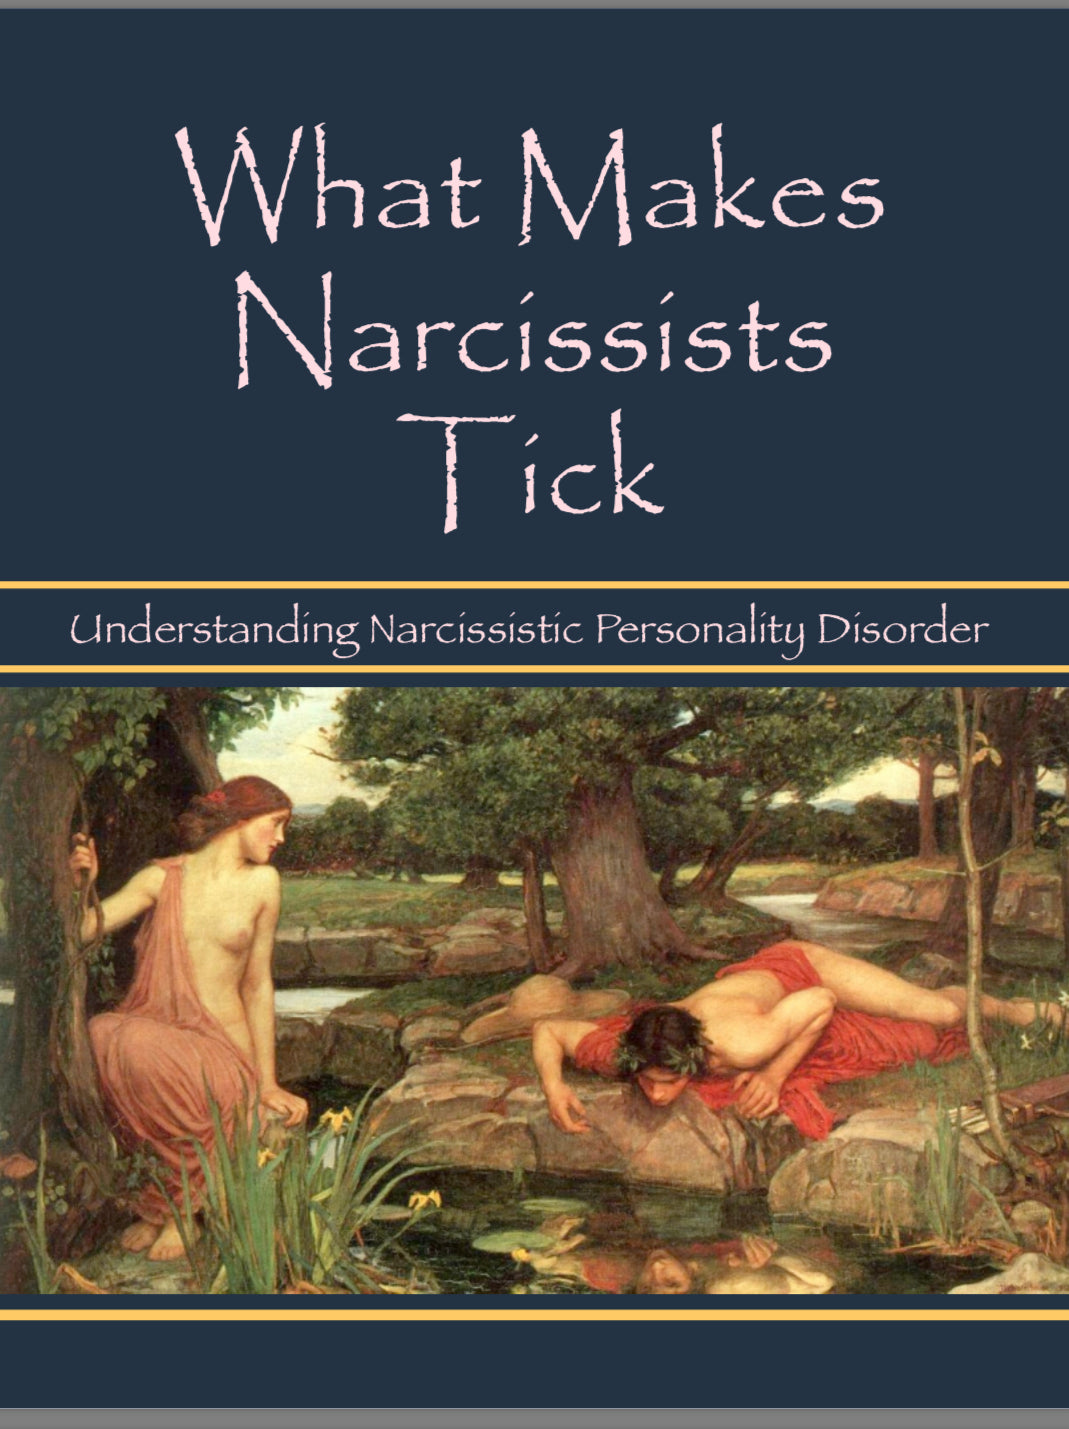 How a Naraccist Ticks